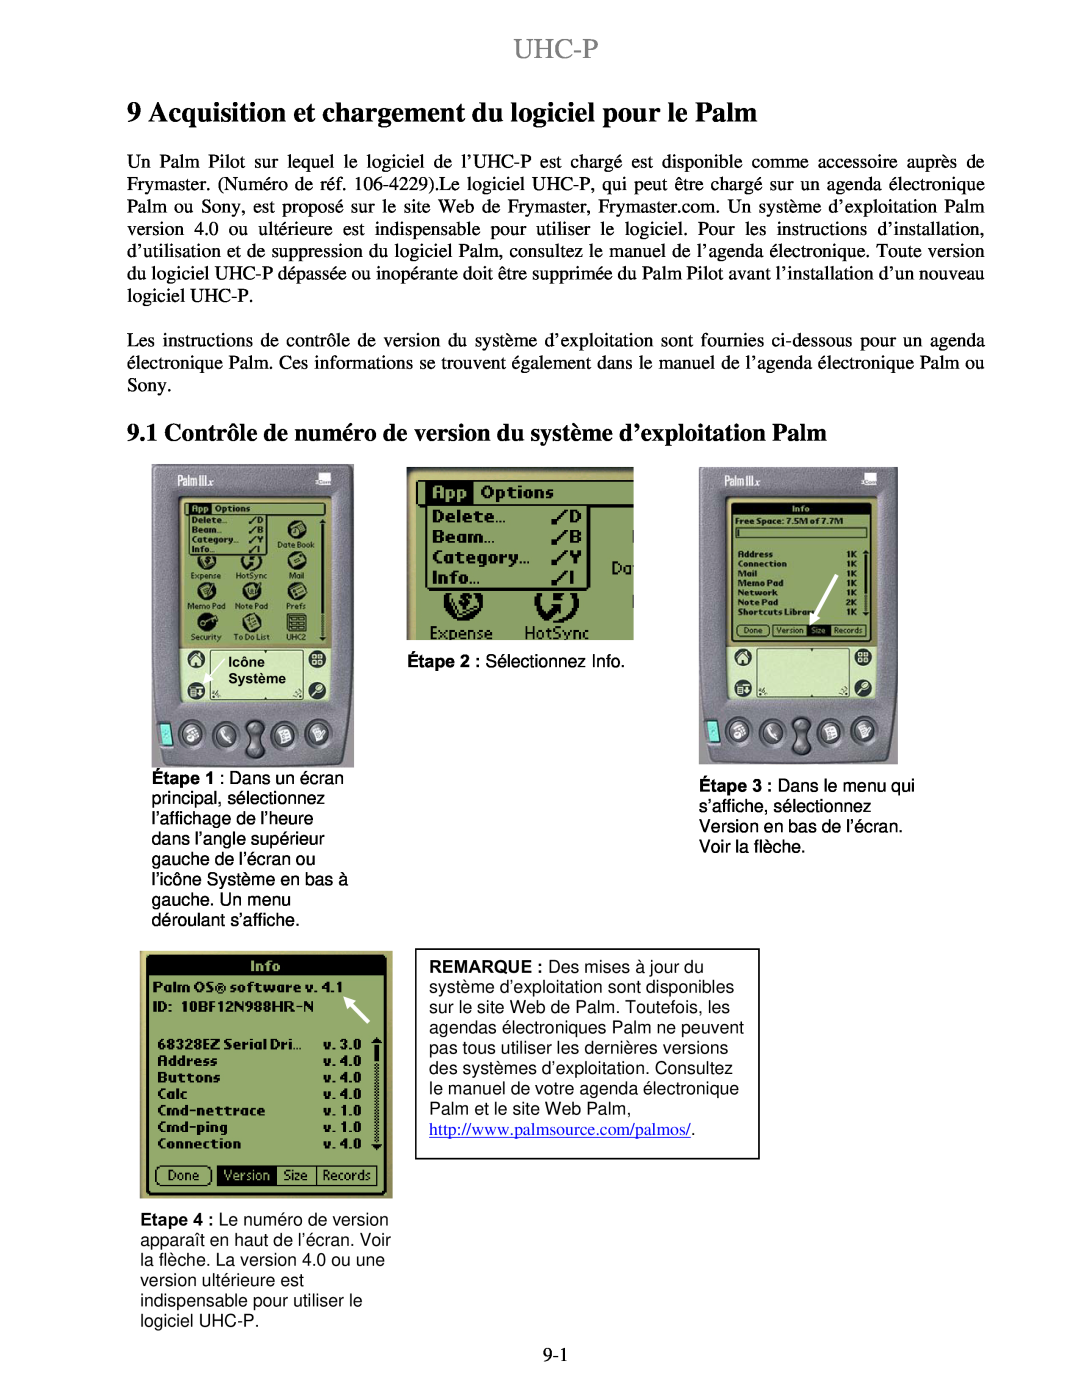 Frymaster UHC-PN, UHC-P 2 manuel dutilisation Acquisition et chargement du logiciel pour le Palm, Uhc-P 